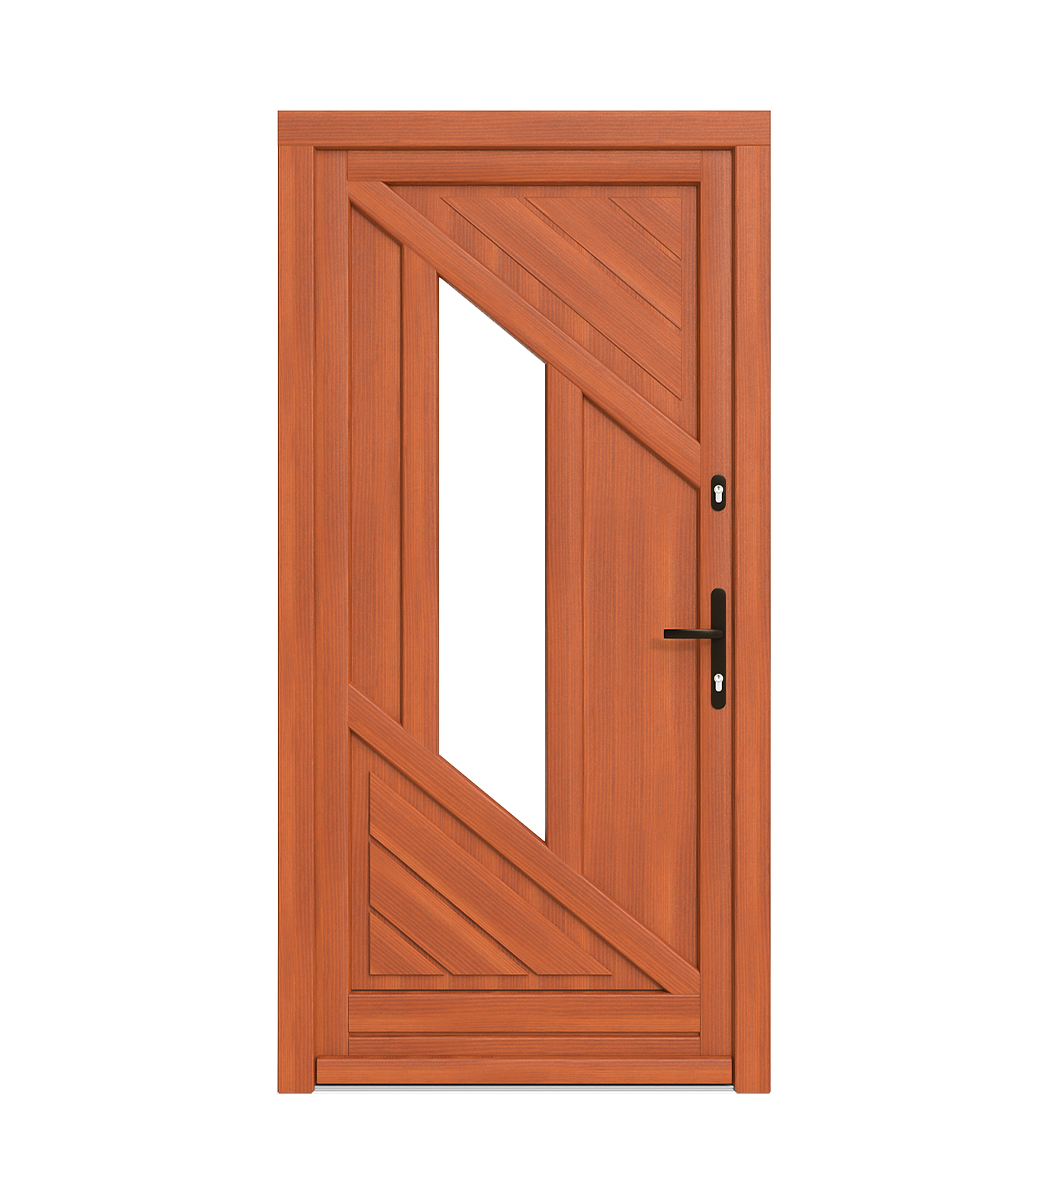 Przewiązki w drzwiach drewnianych